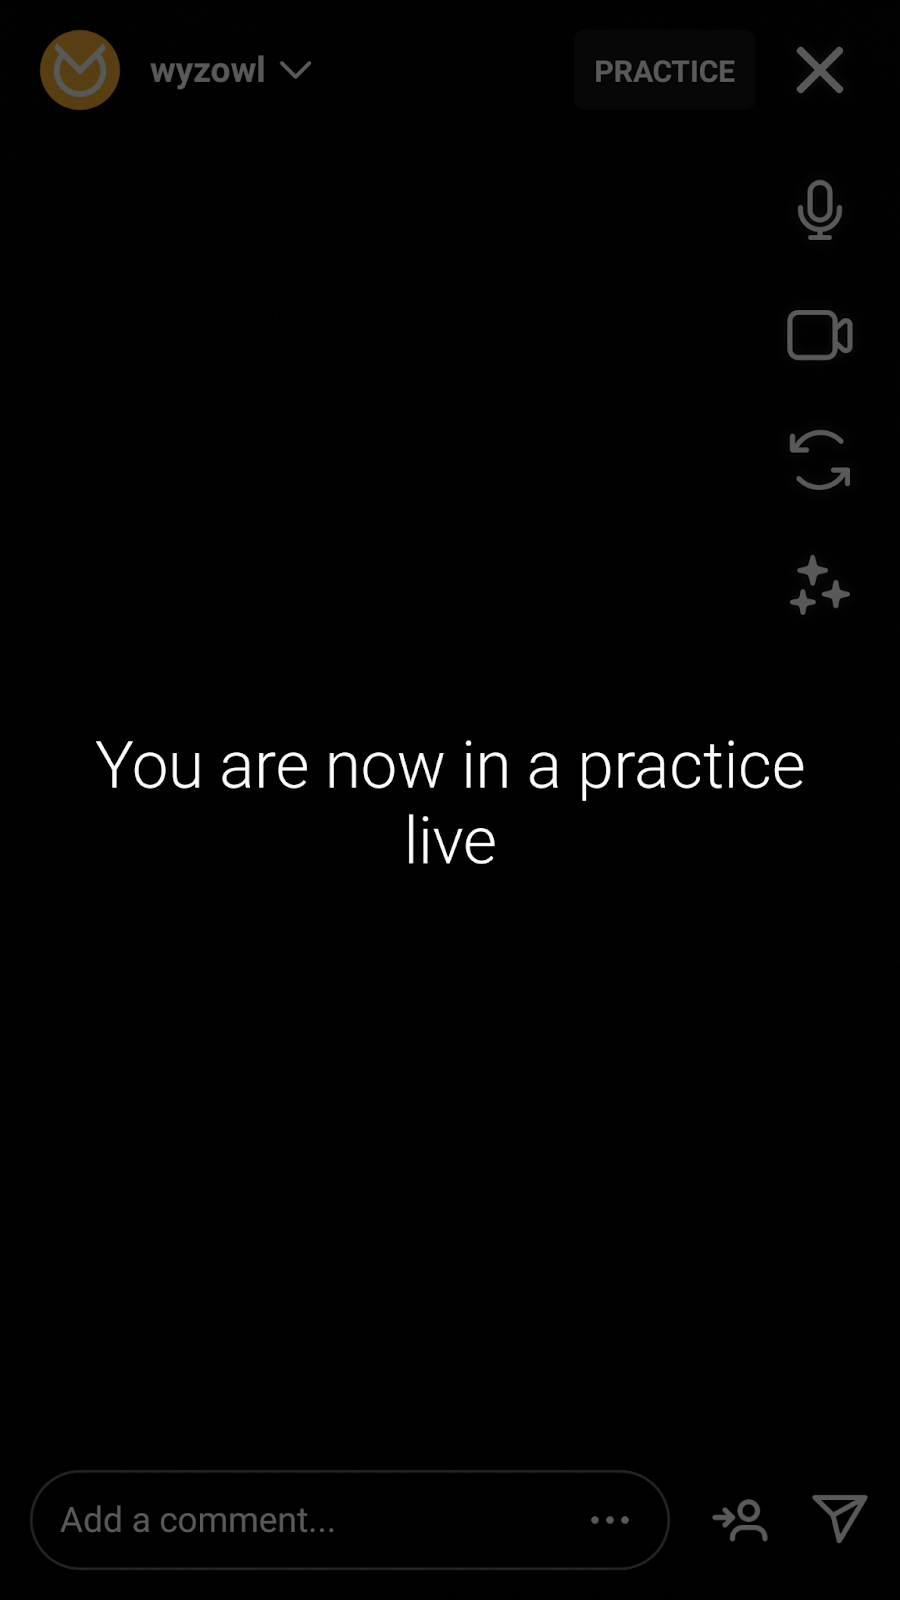 Instagram Live practice